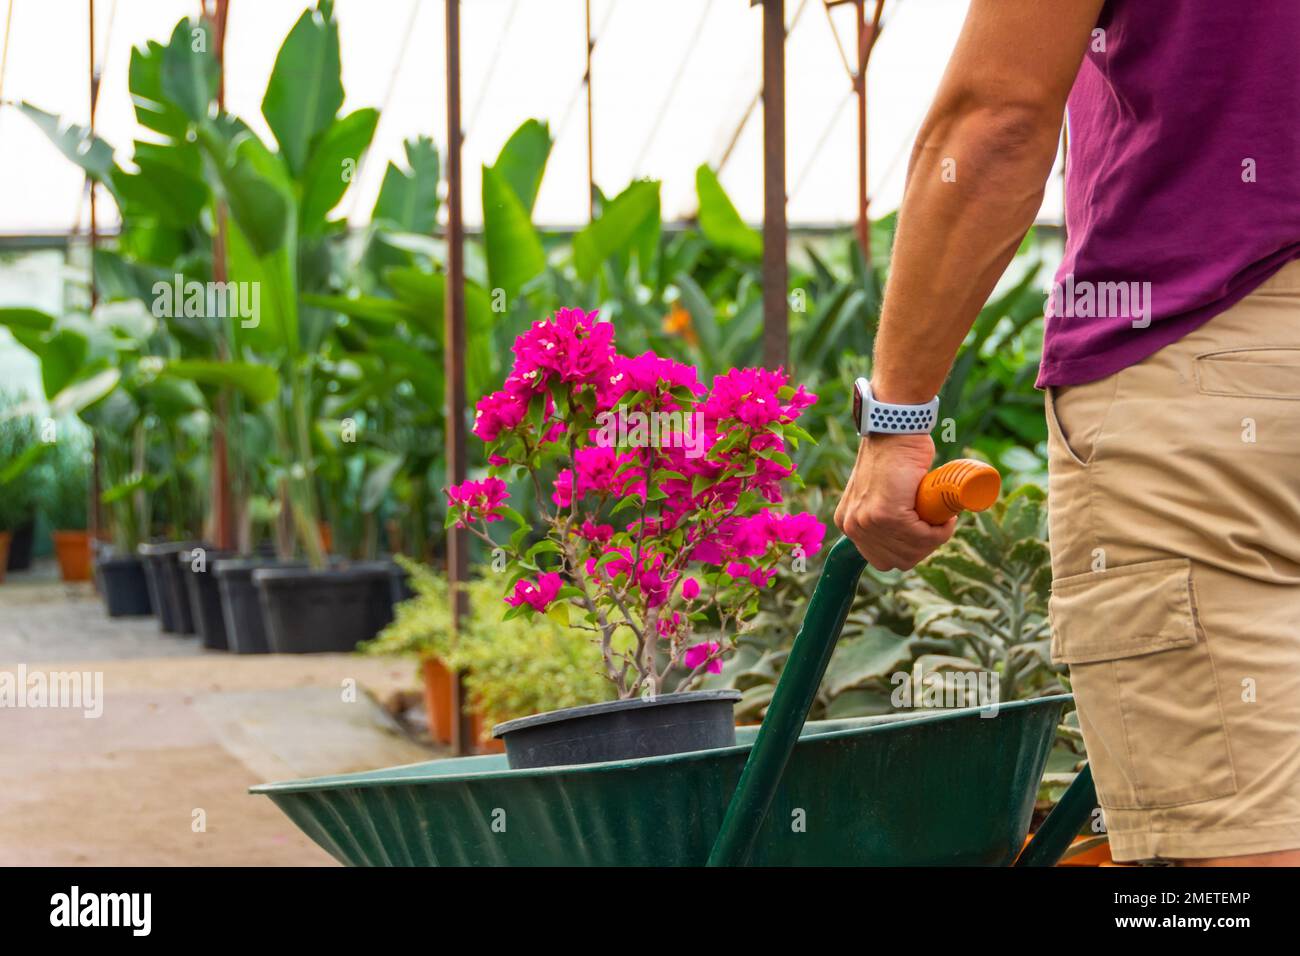 El jardinero masculino en pantalones cortos transporta un arbusto de buganvillas floreciente de color rosa lila en el invernadero. Cuidado y cultivo de plantas a escala industrial Foto de stock